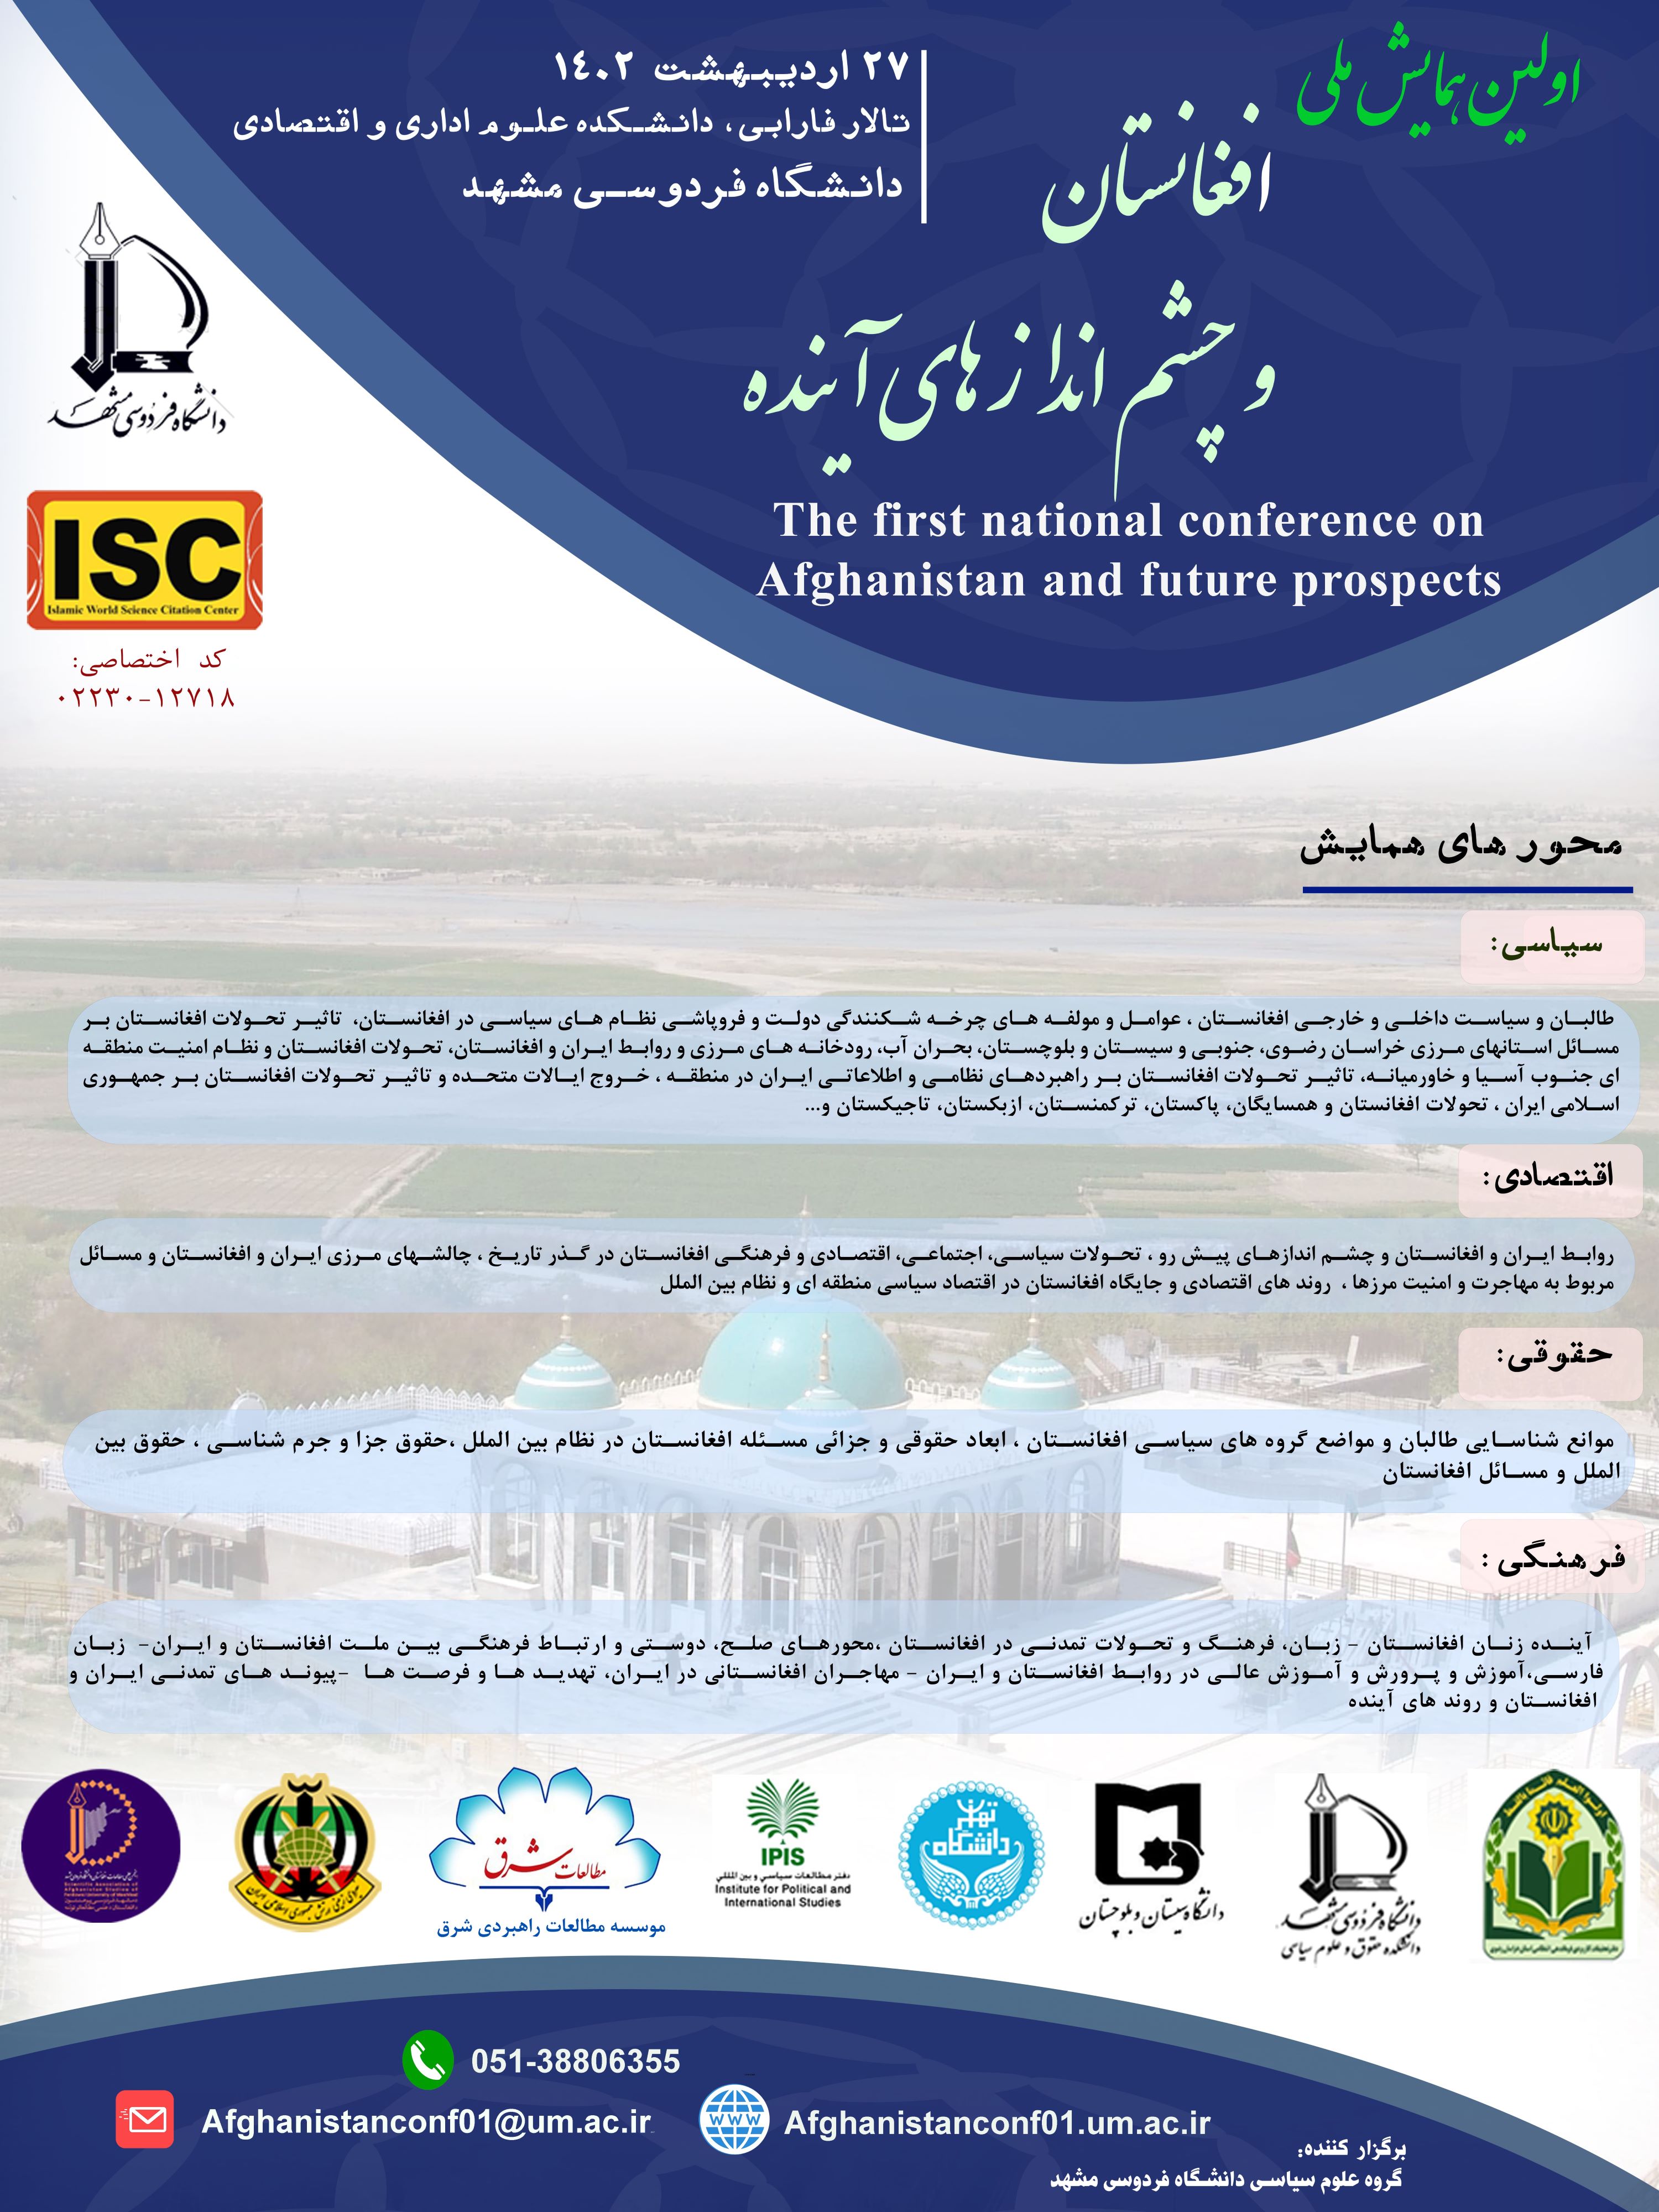 Original_baner_Afghanistan_conference_14022.jpg